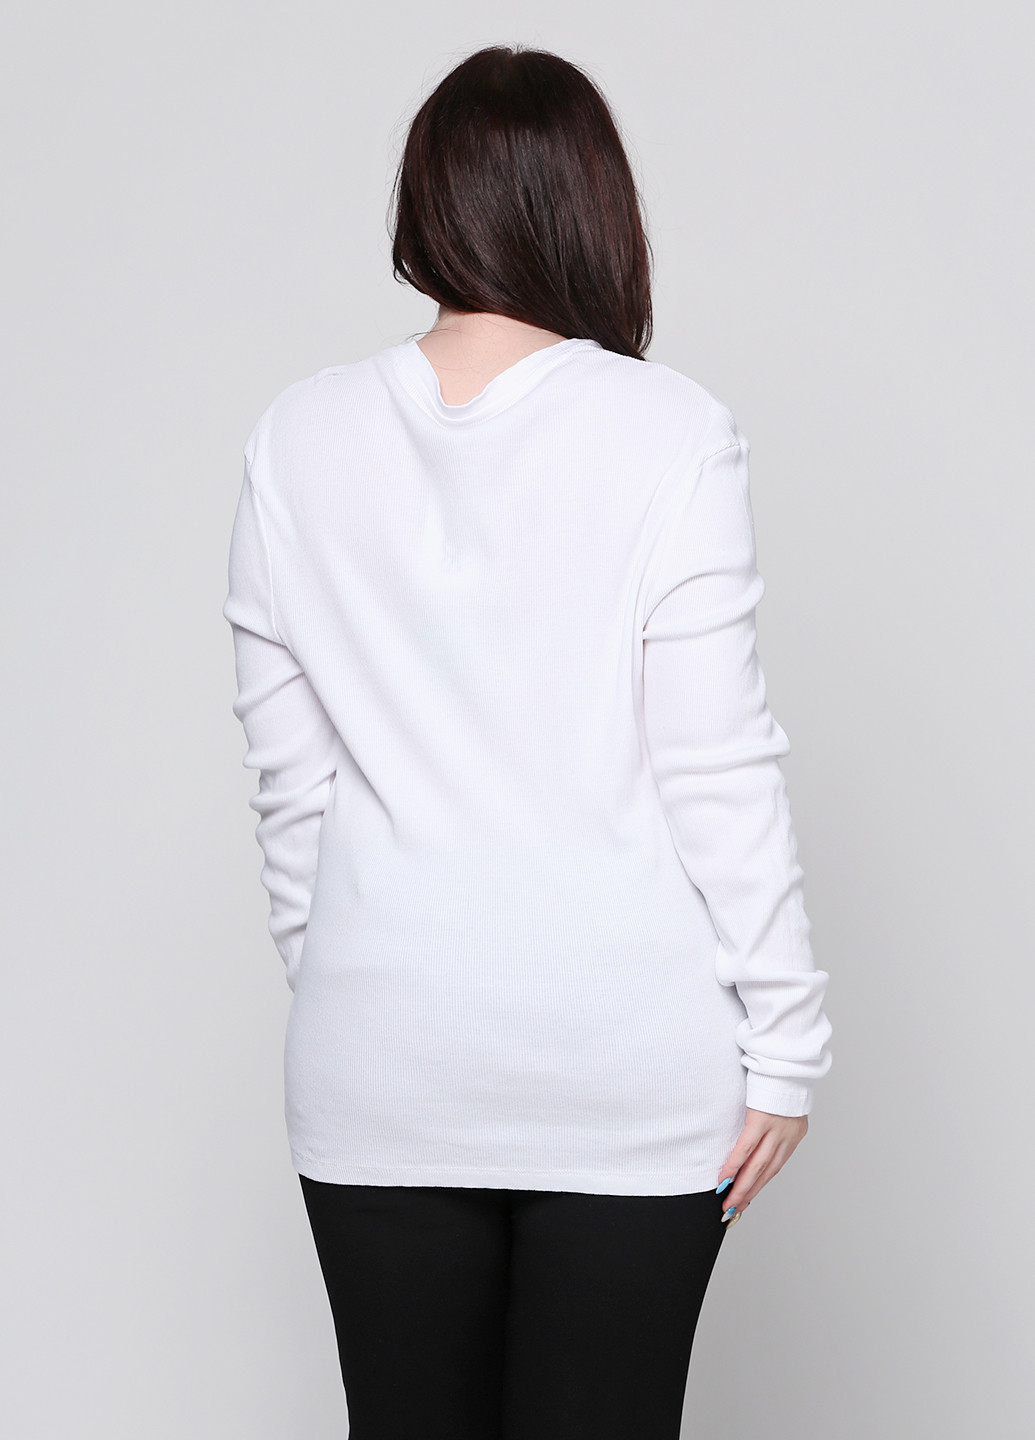 Белый демисезонный пуловер пуловер Asos